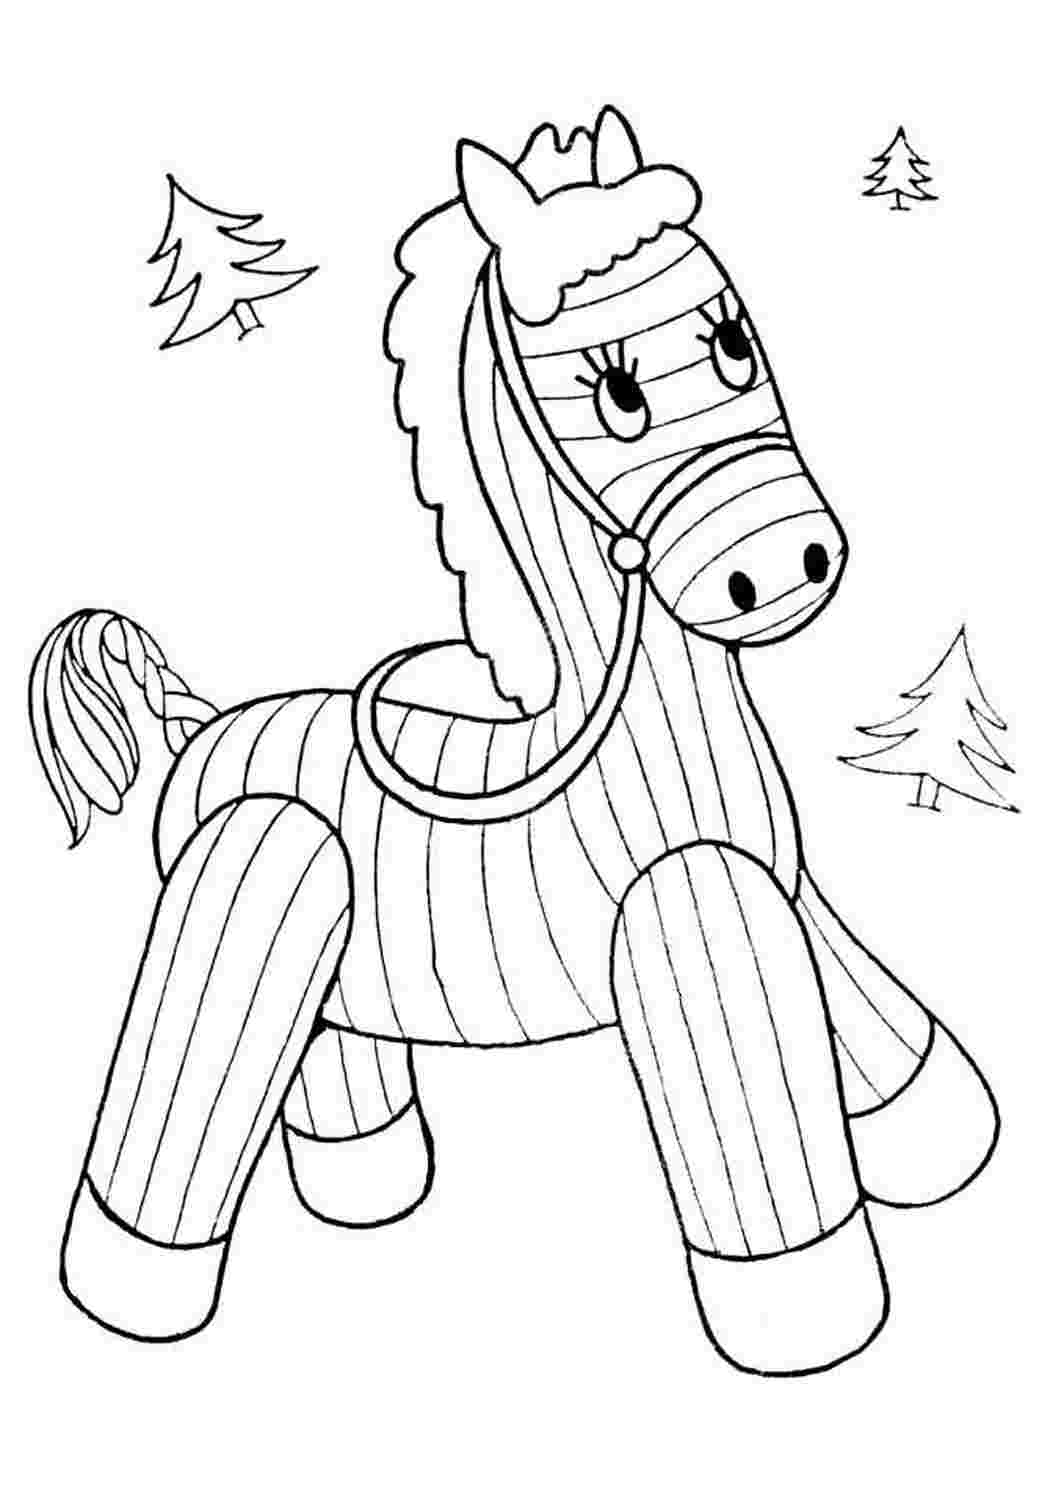 Раскрашиваем лошадку. Раскраска. Лошадка. Лошадь раскраска для детей. Лошадка раскраска для малышей. Новогодняя лошадка раскраска.